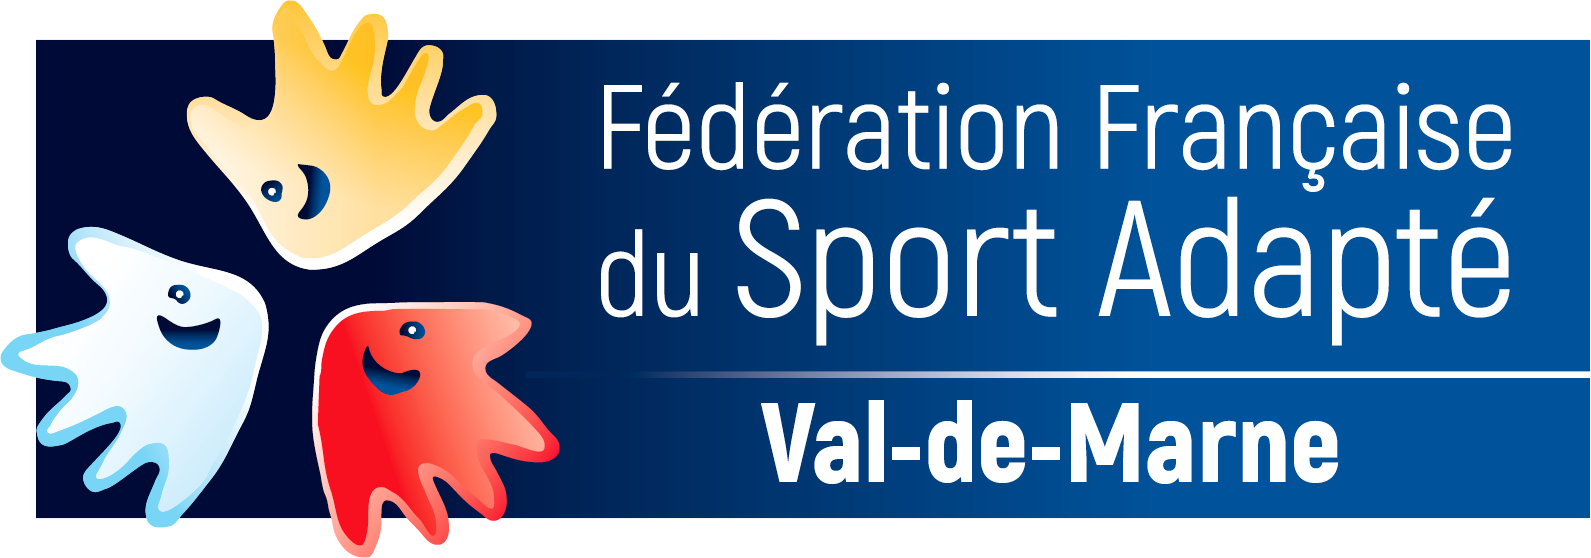 Comité de Sport Adapté du Val-de-Marne